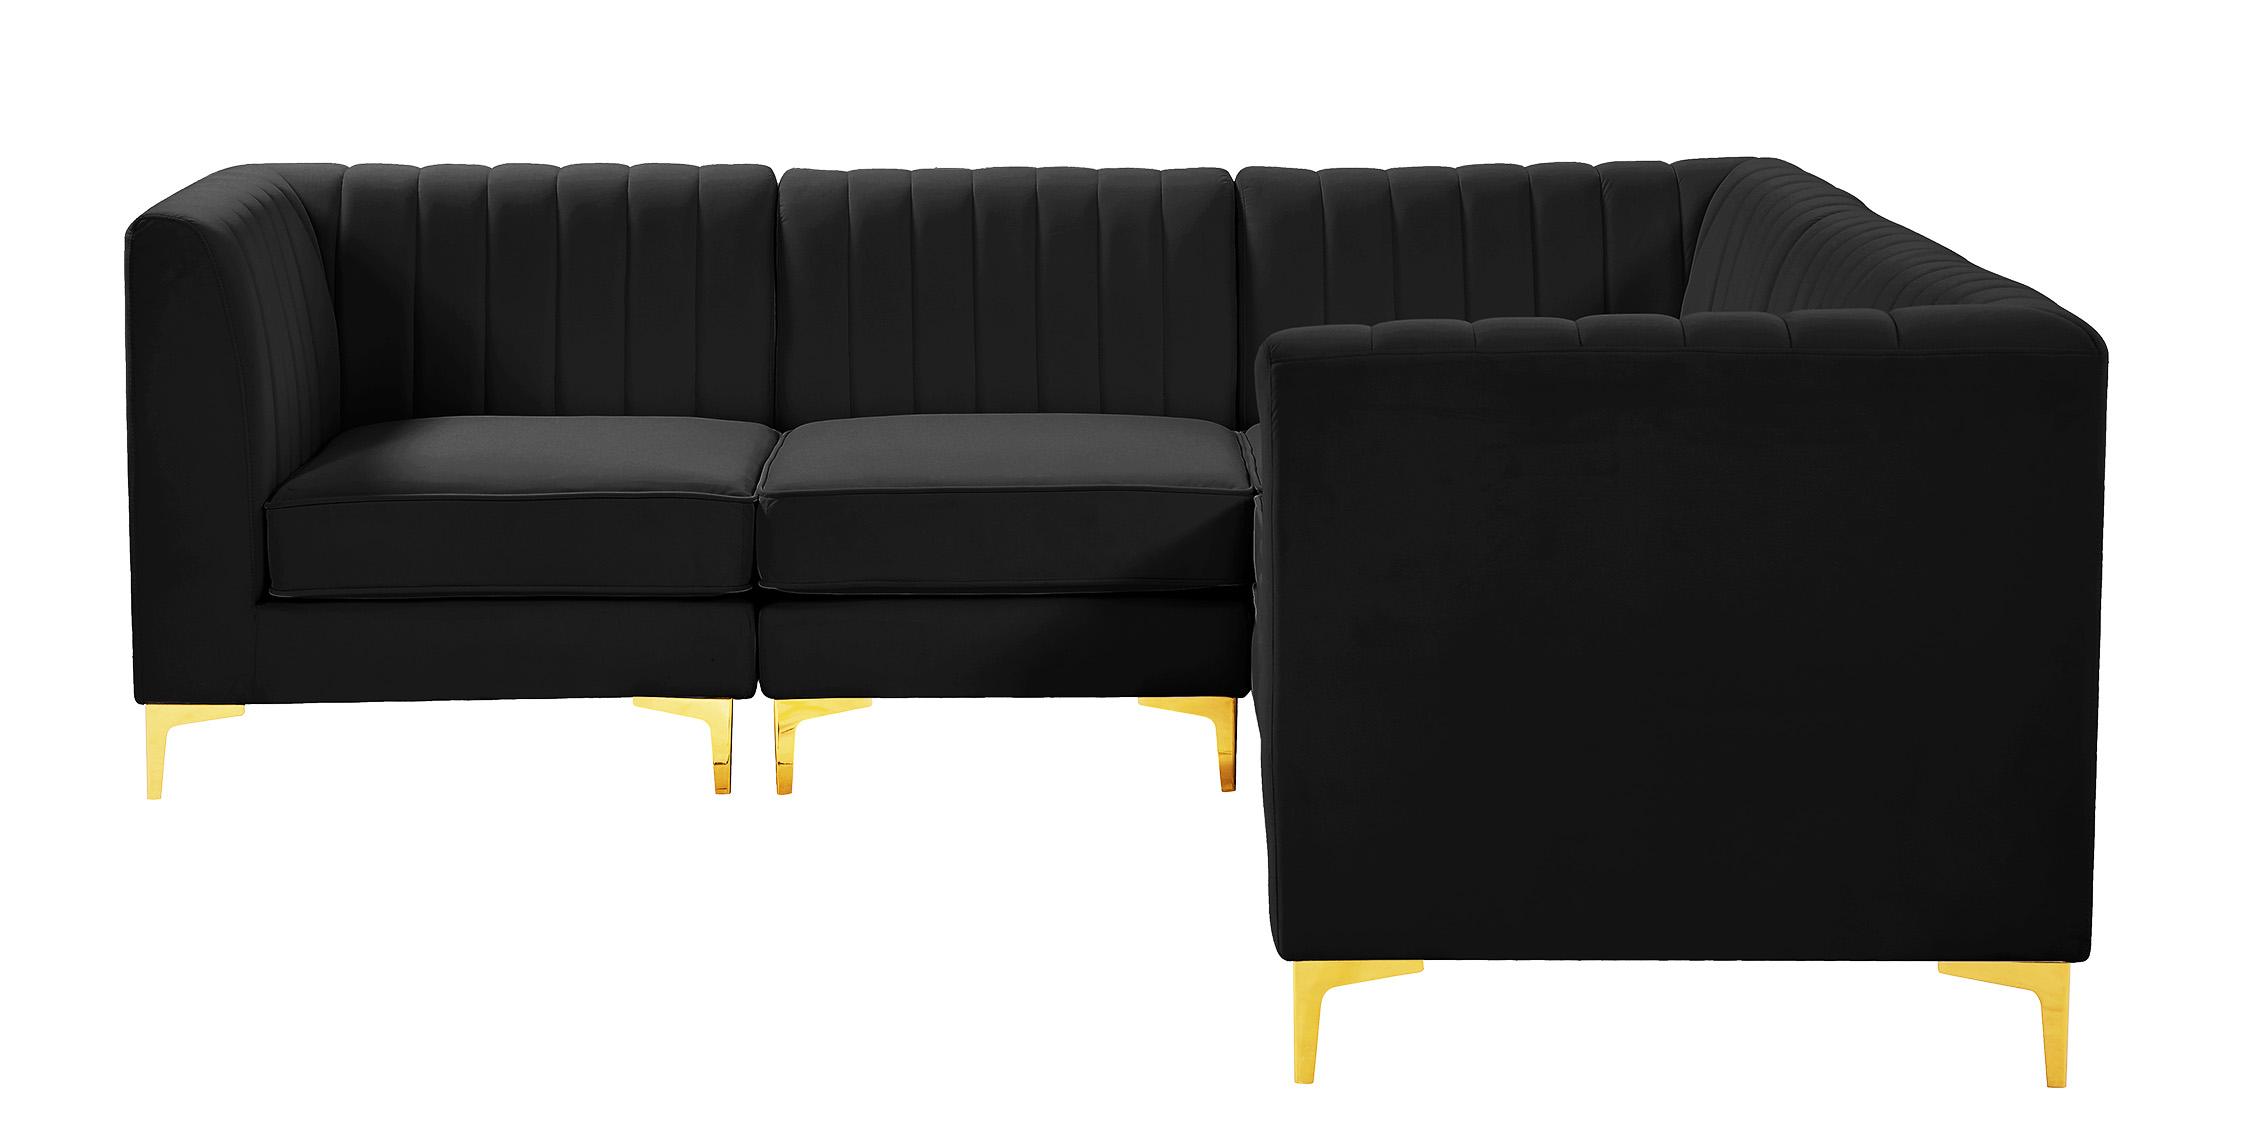 

    
Meridian Furniture ALINA 604Black-Sec5C Modular Sectional Sofa Black 604Black-Sec5C
